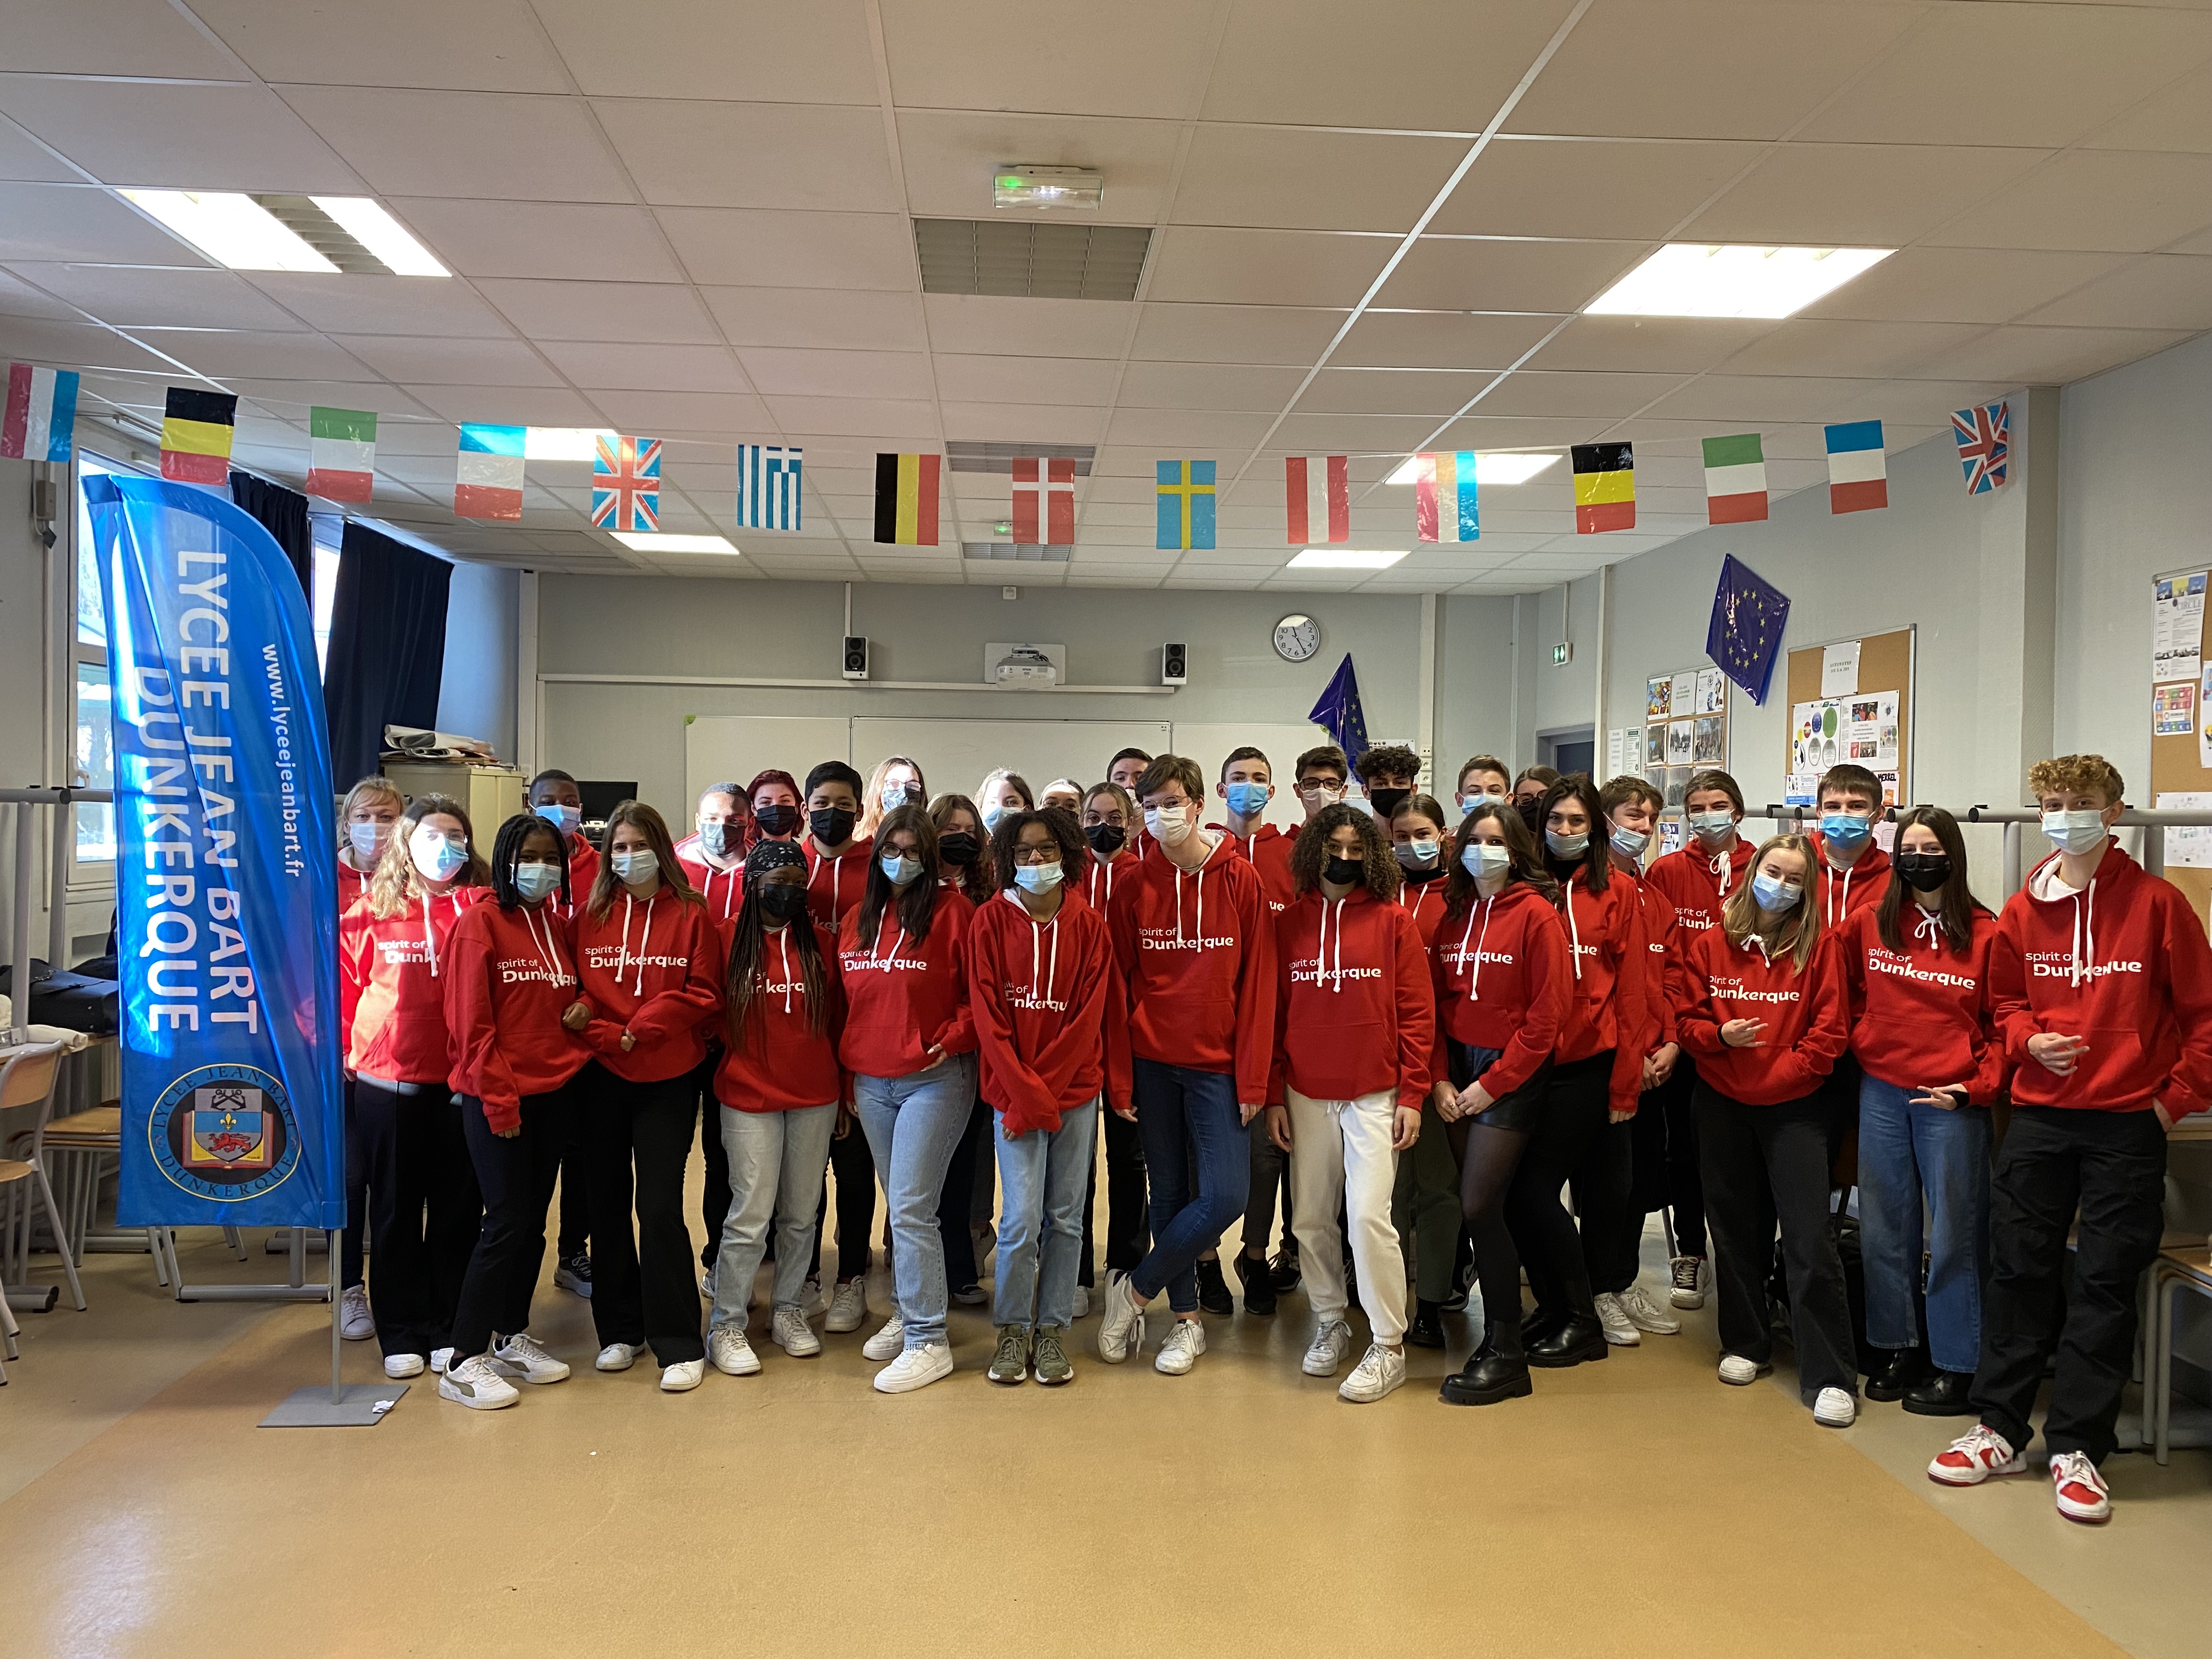 Les élèves de la classe Erasmus du lycée Jean Bart de Dunkerque réunis.